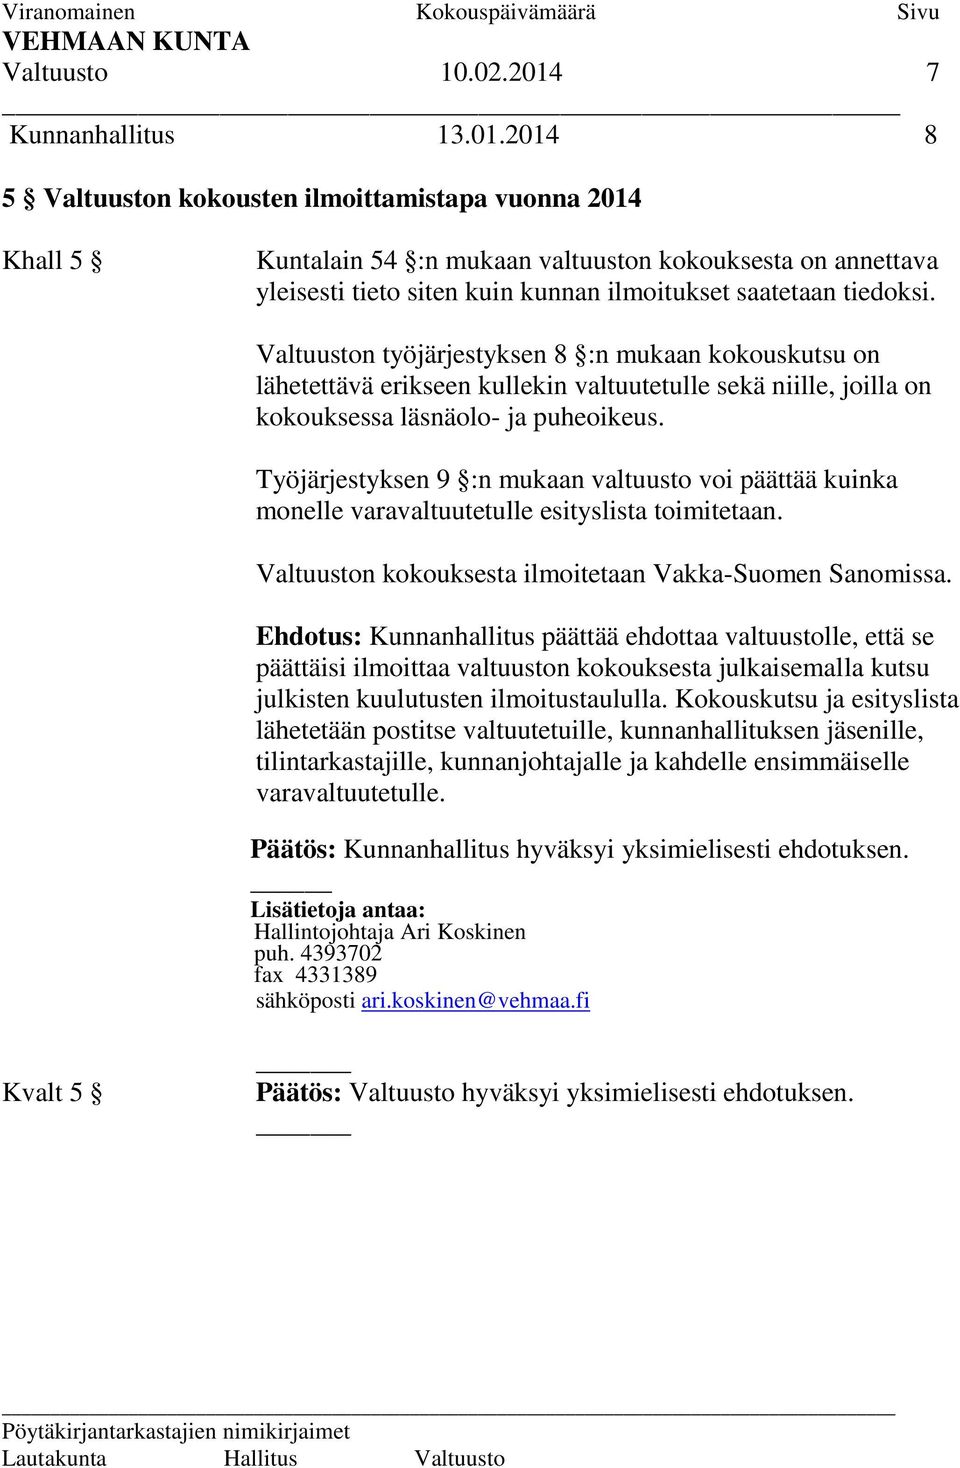 2014 8 5 Valtuuston kokousten ilmoittamistapa vuonna 2014 Khall 5 Kuntalain 54 :n mukaan valtuuston kokouksesta on annettava yleisesti tieto siten kuin kunnan ilmoitukset saatetaan tiedoksi.